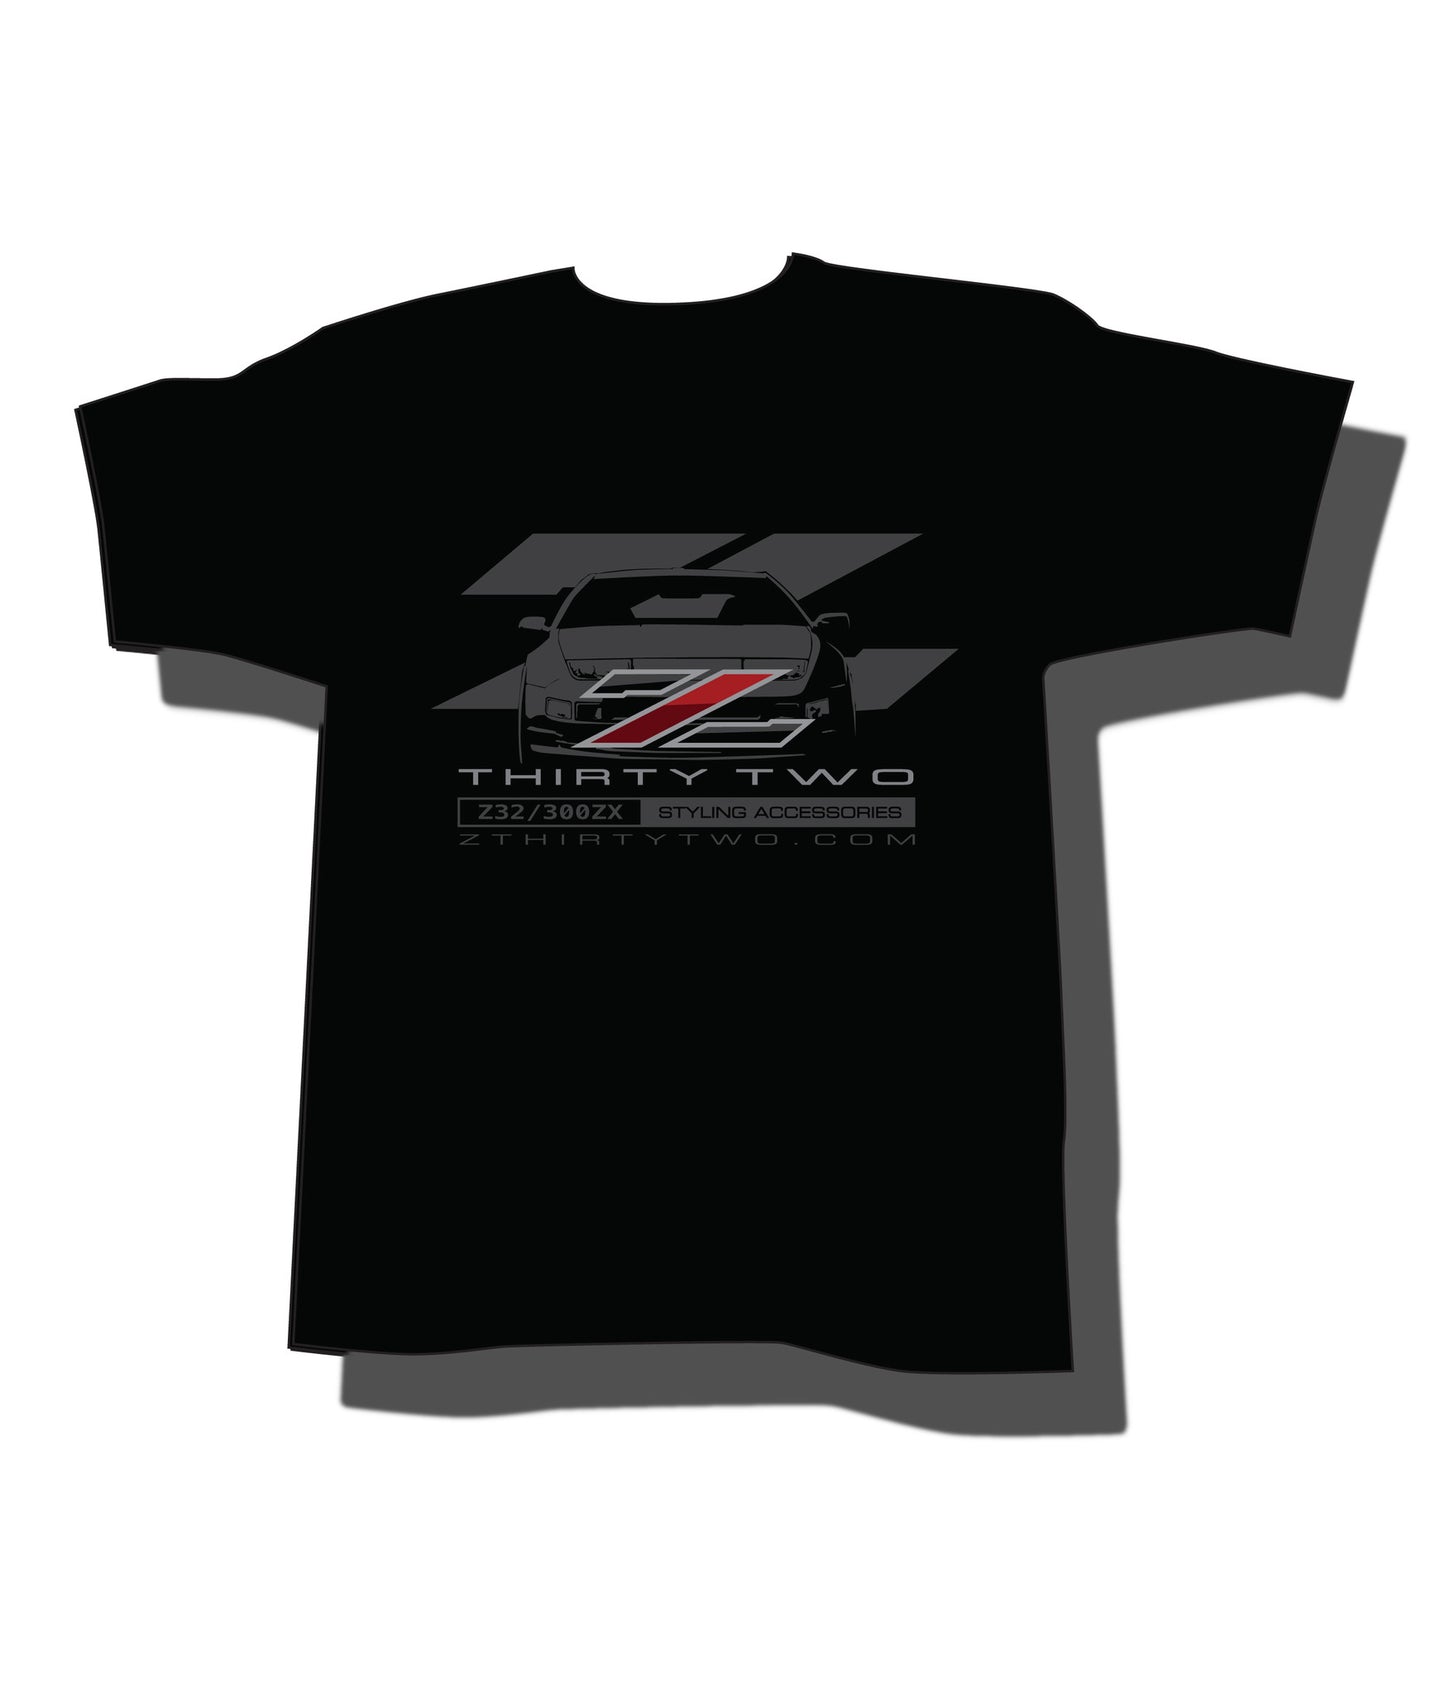 ZThirtyTwo T-Shirt Z32/300zx